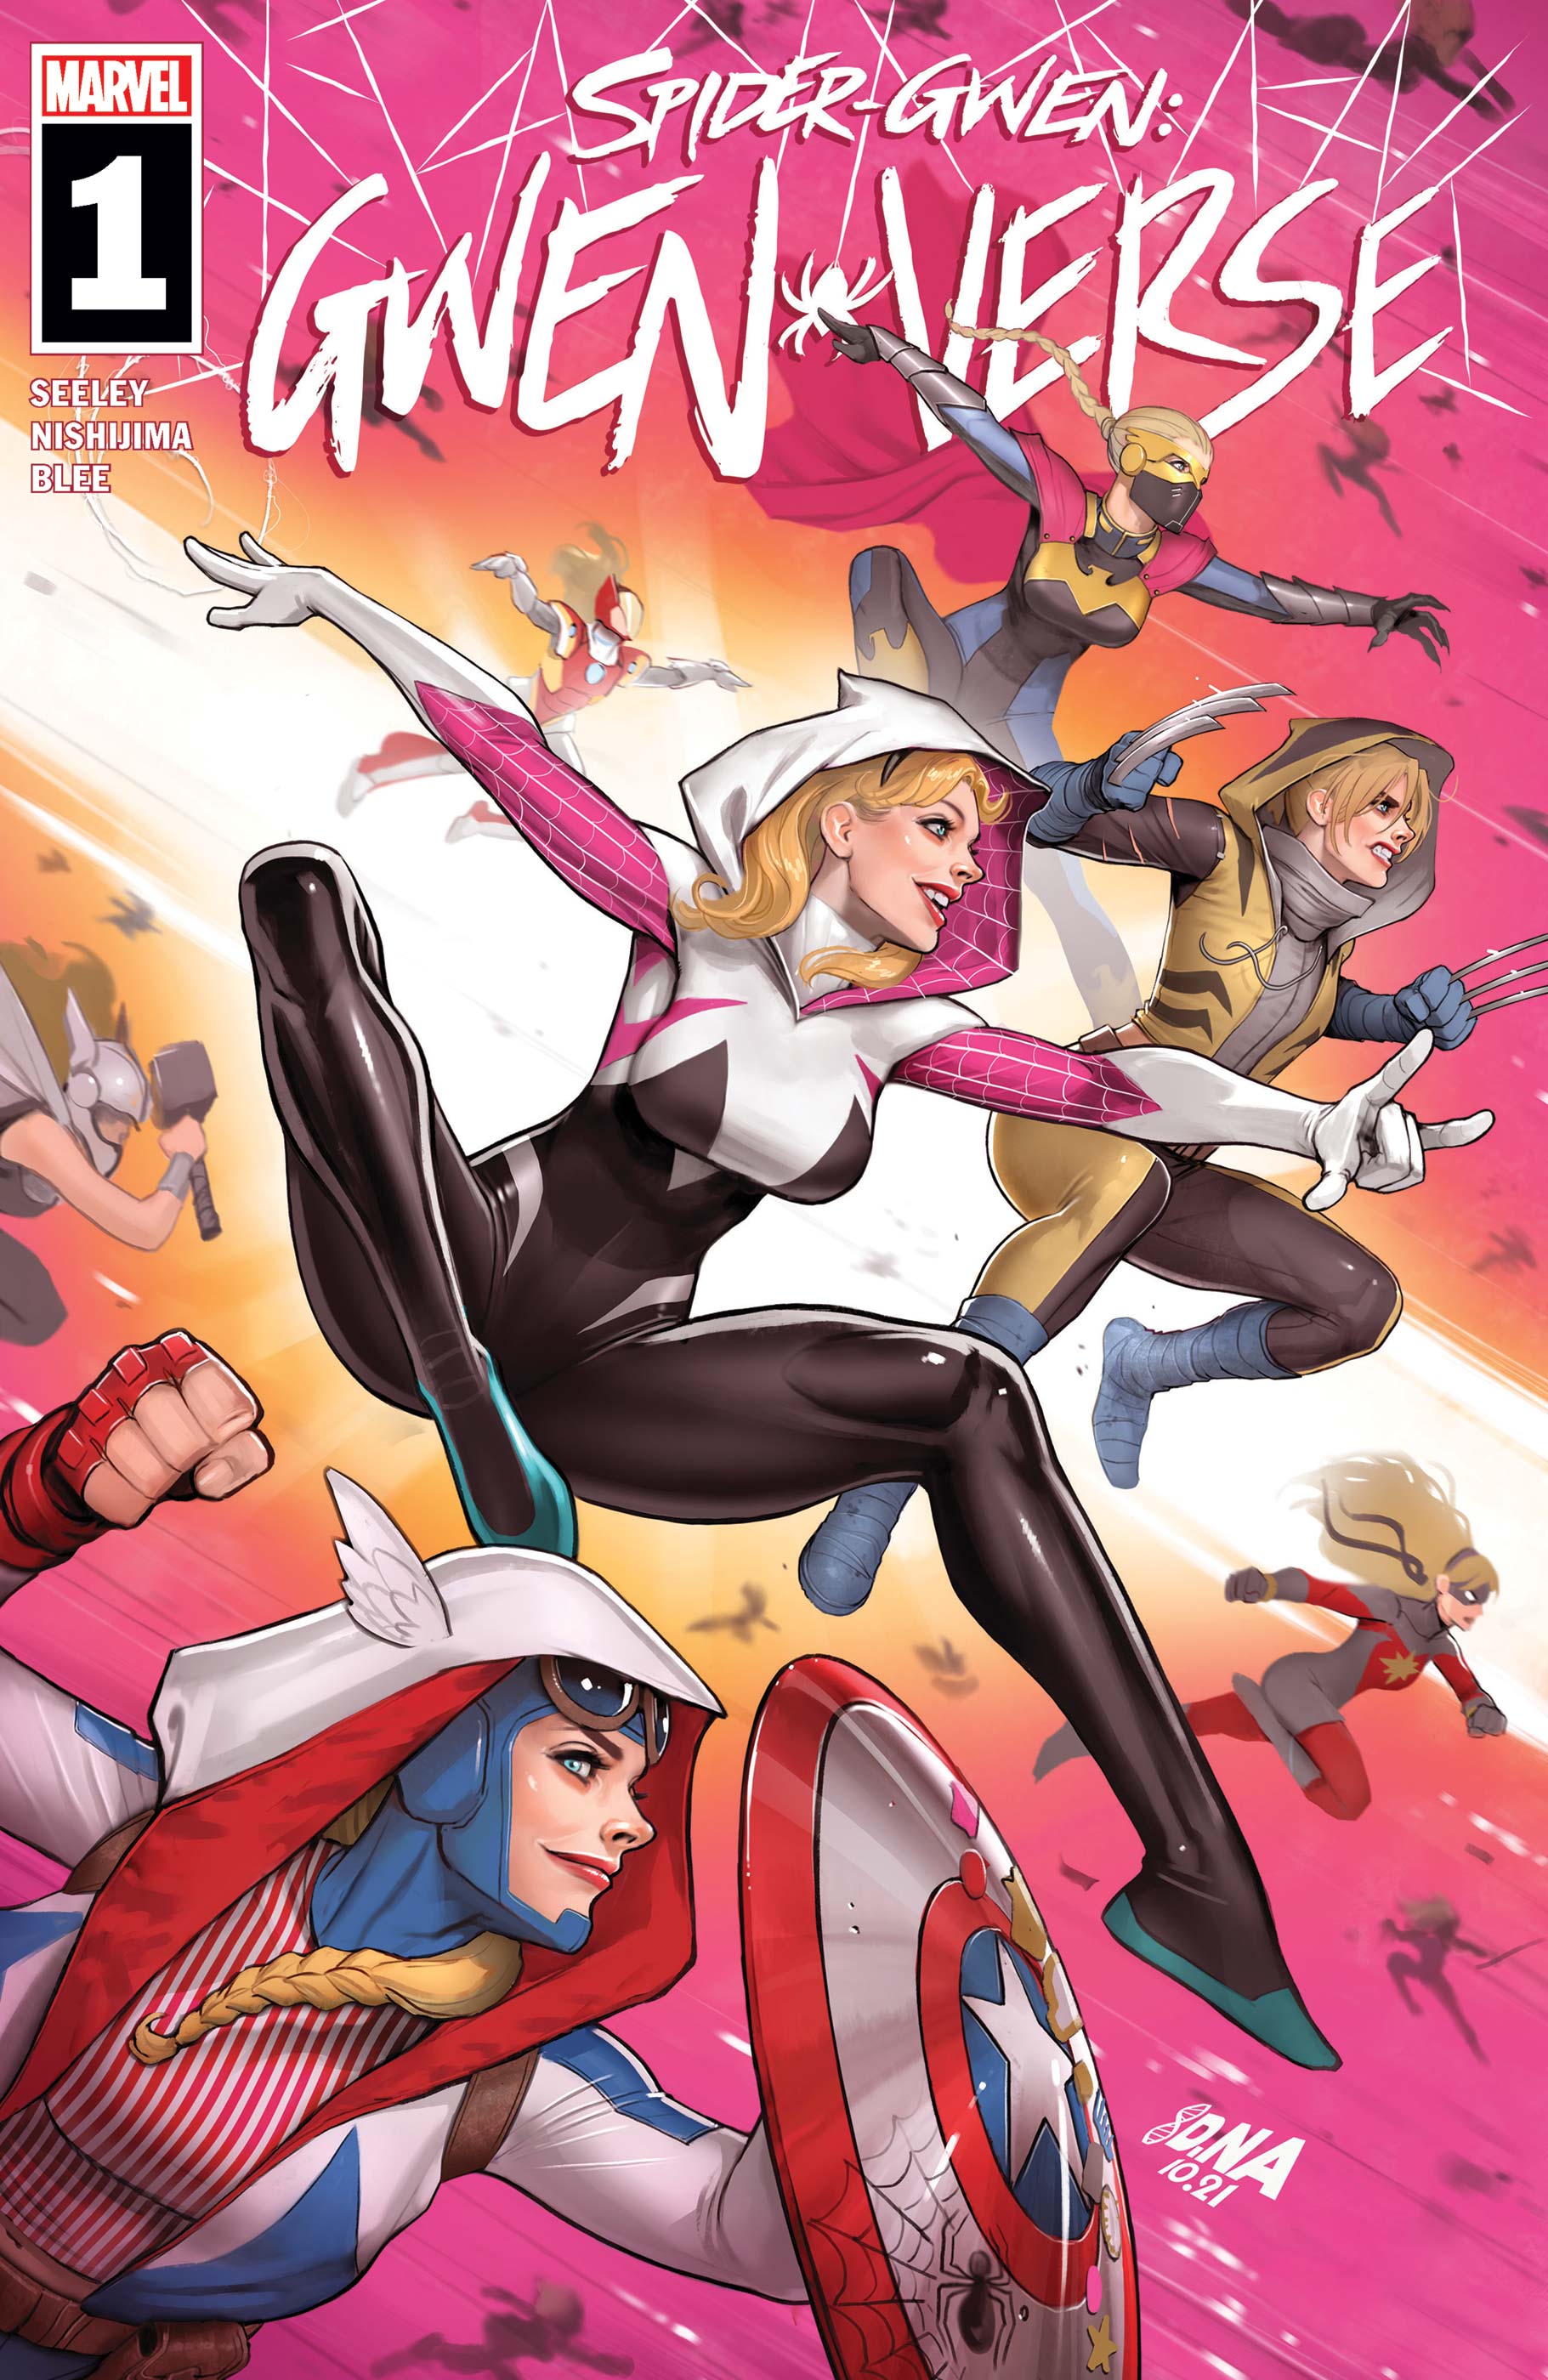 Spider-Gwen: Gwenverse (2022) #1